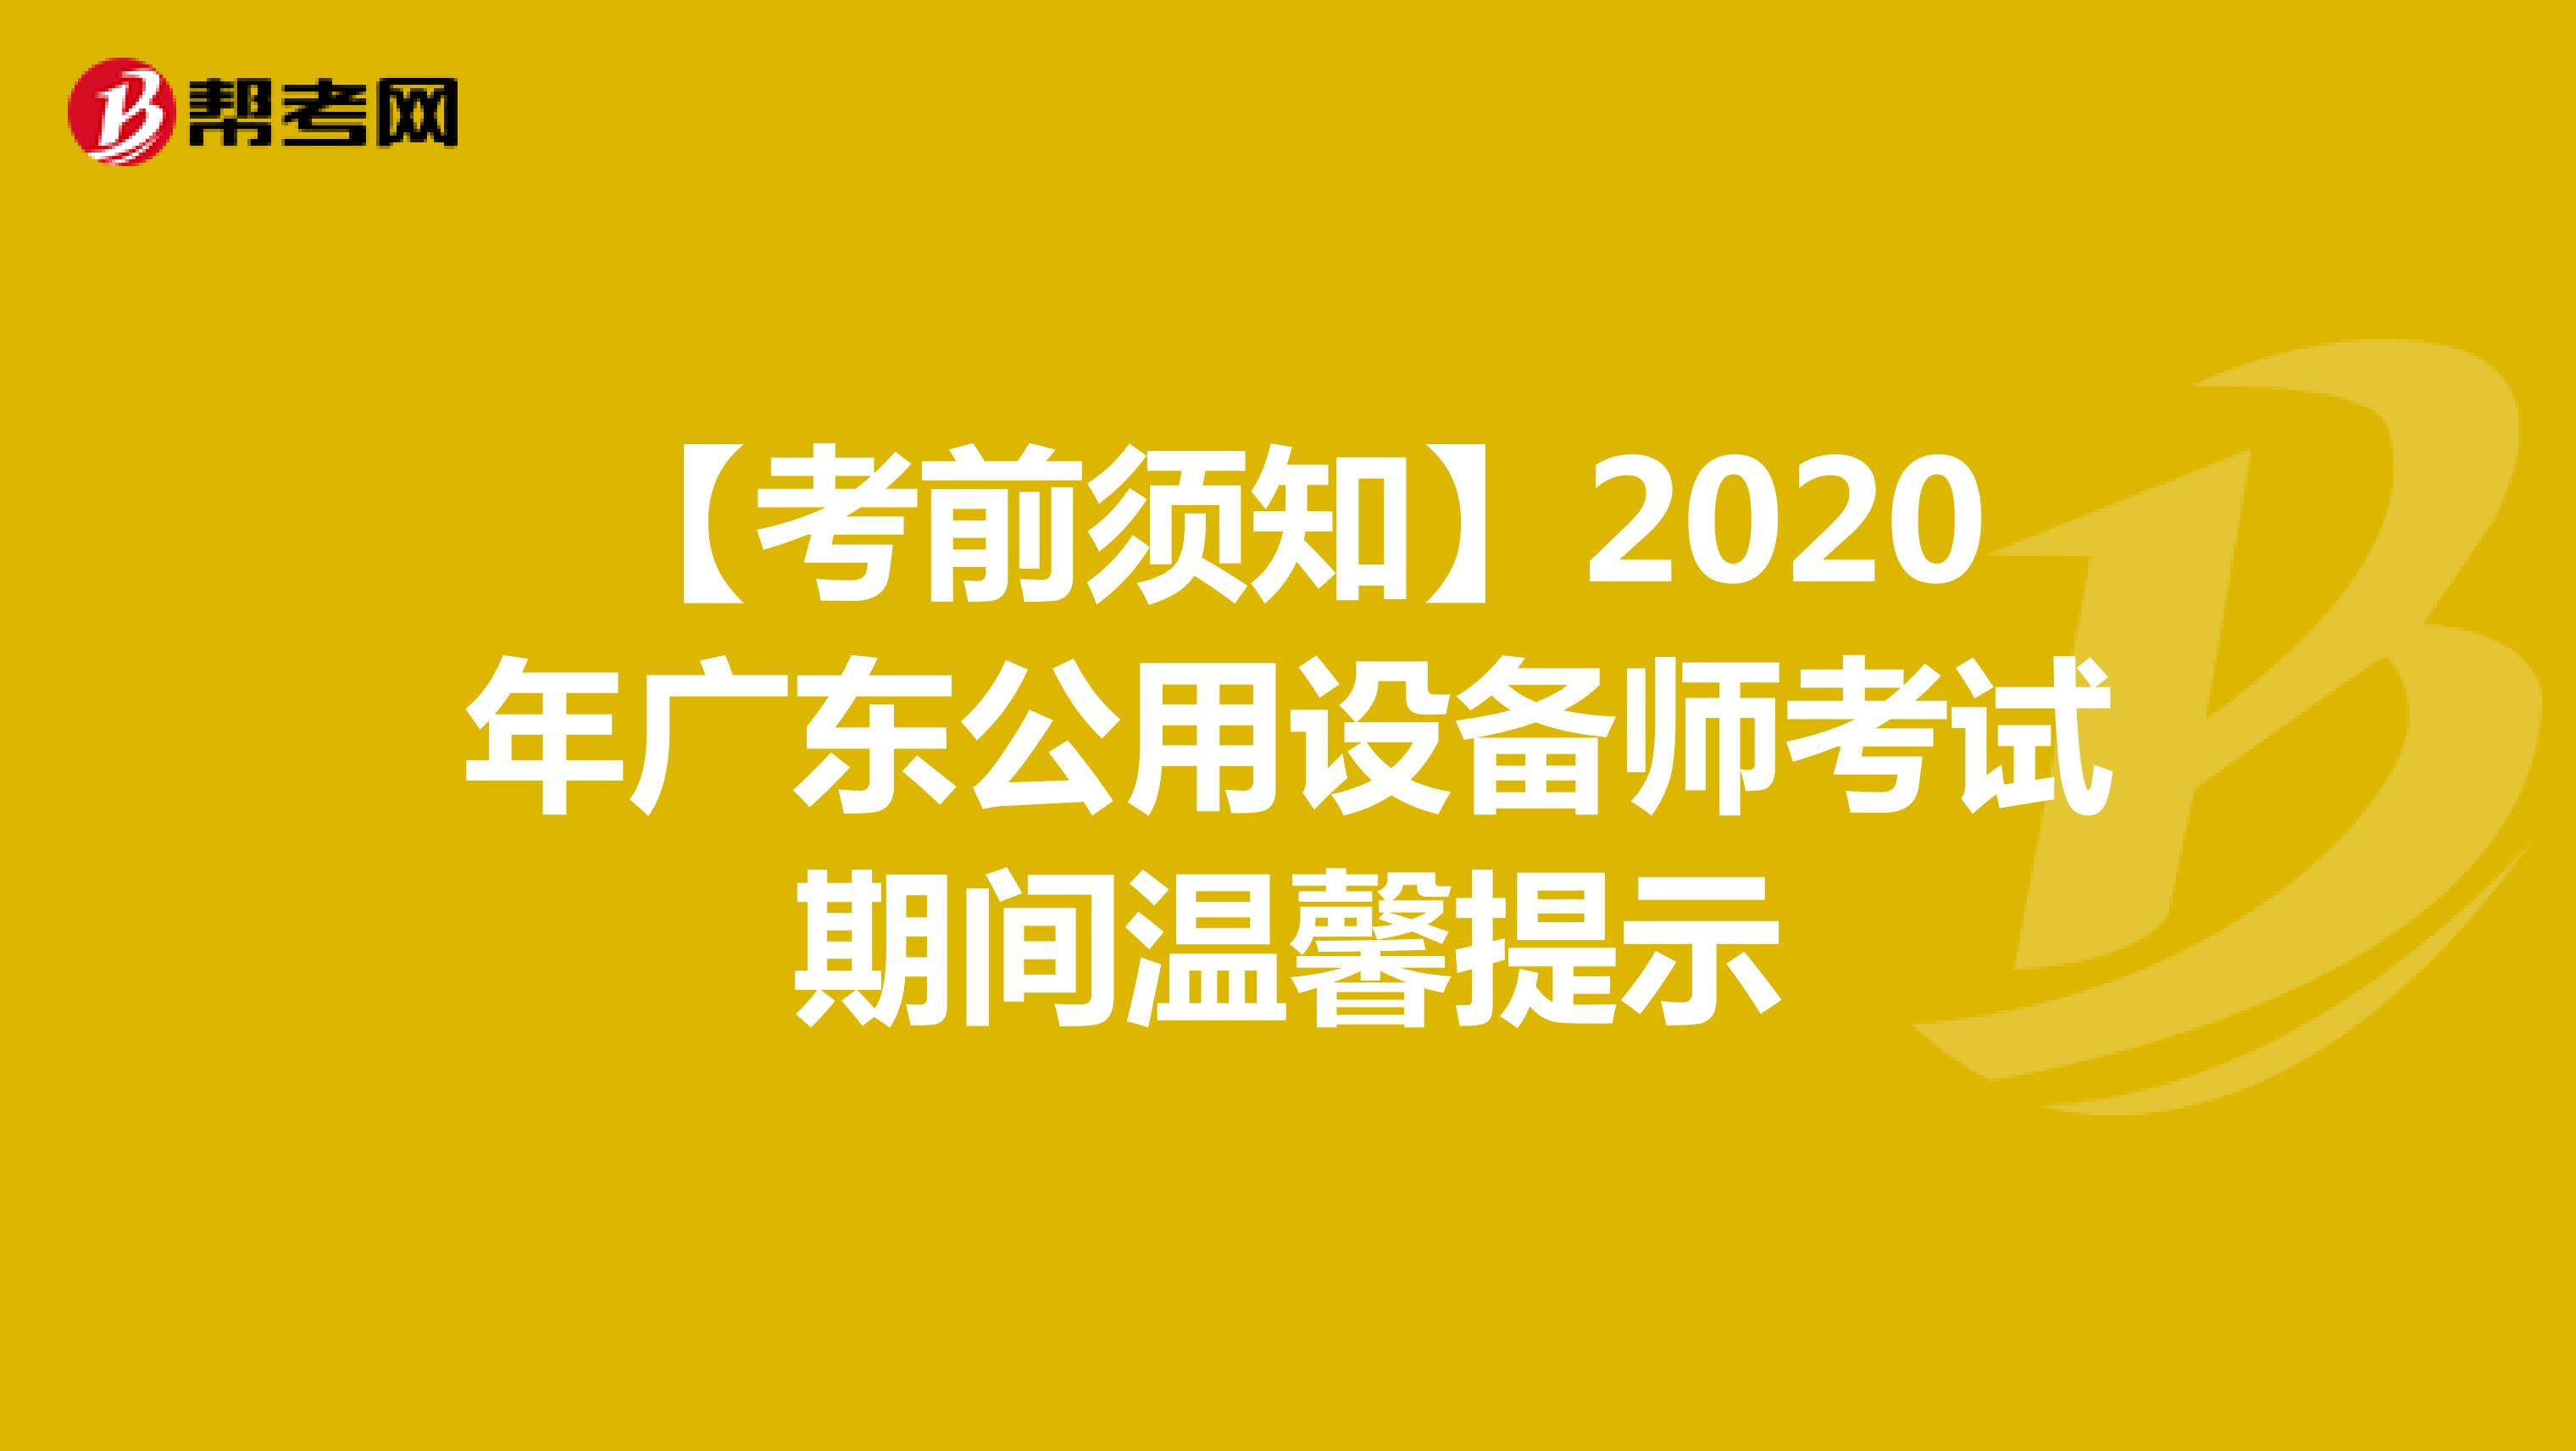 【考前须知】2020年广东公用设备师考试期间温馨提示